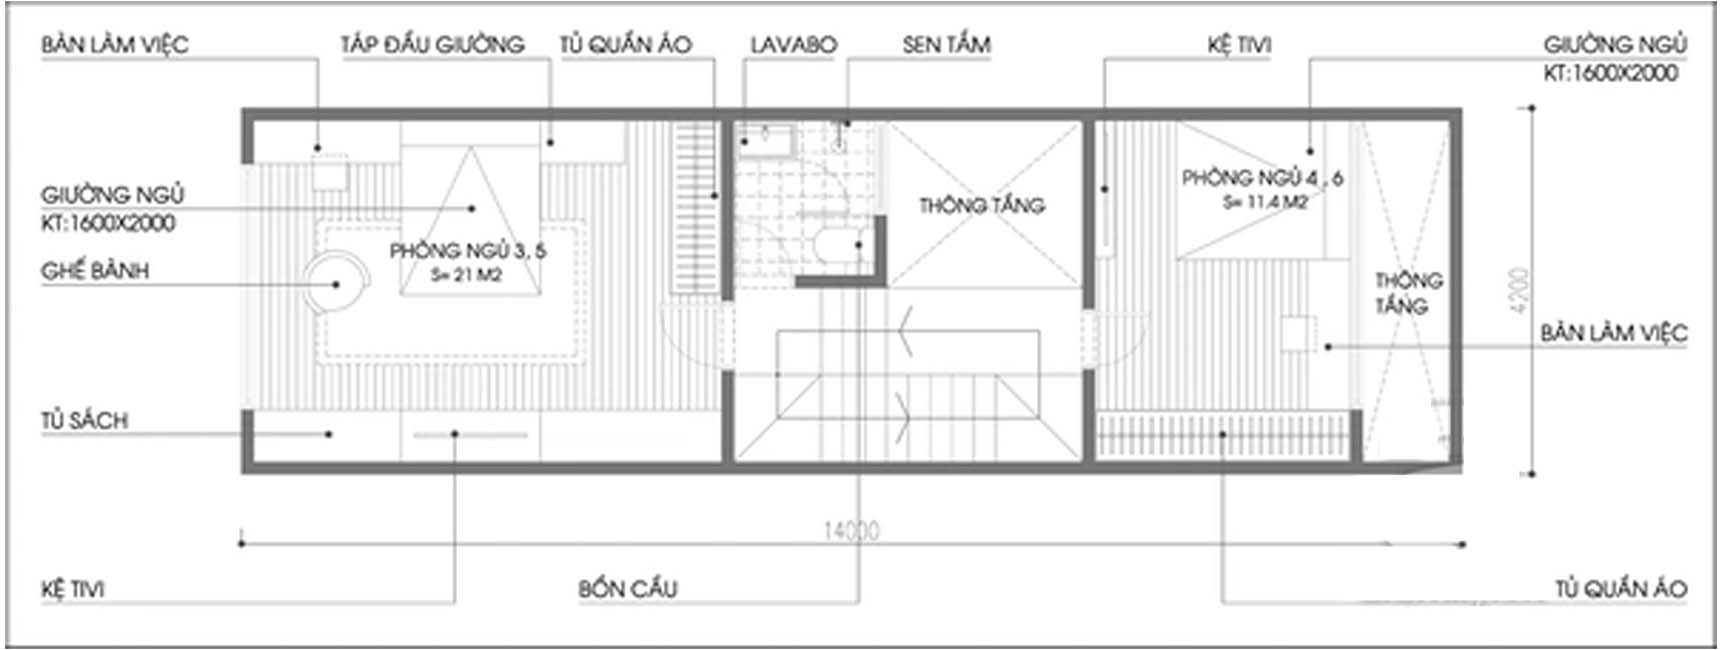 Cách thiết kế và bố trí nội thất cho nhà phố có 6 phòng ngủ - Ảnh 3.